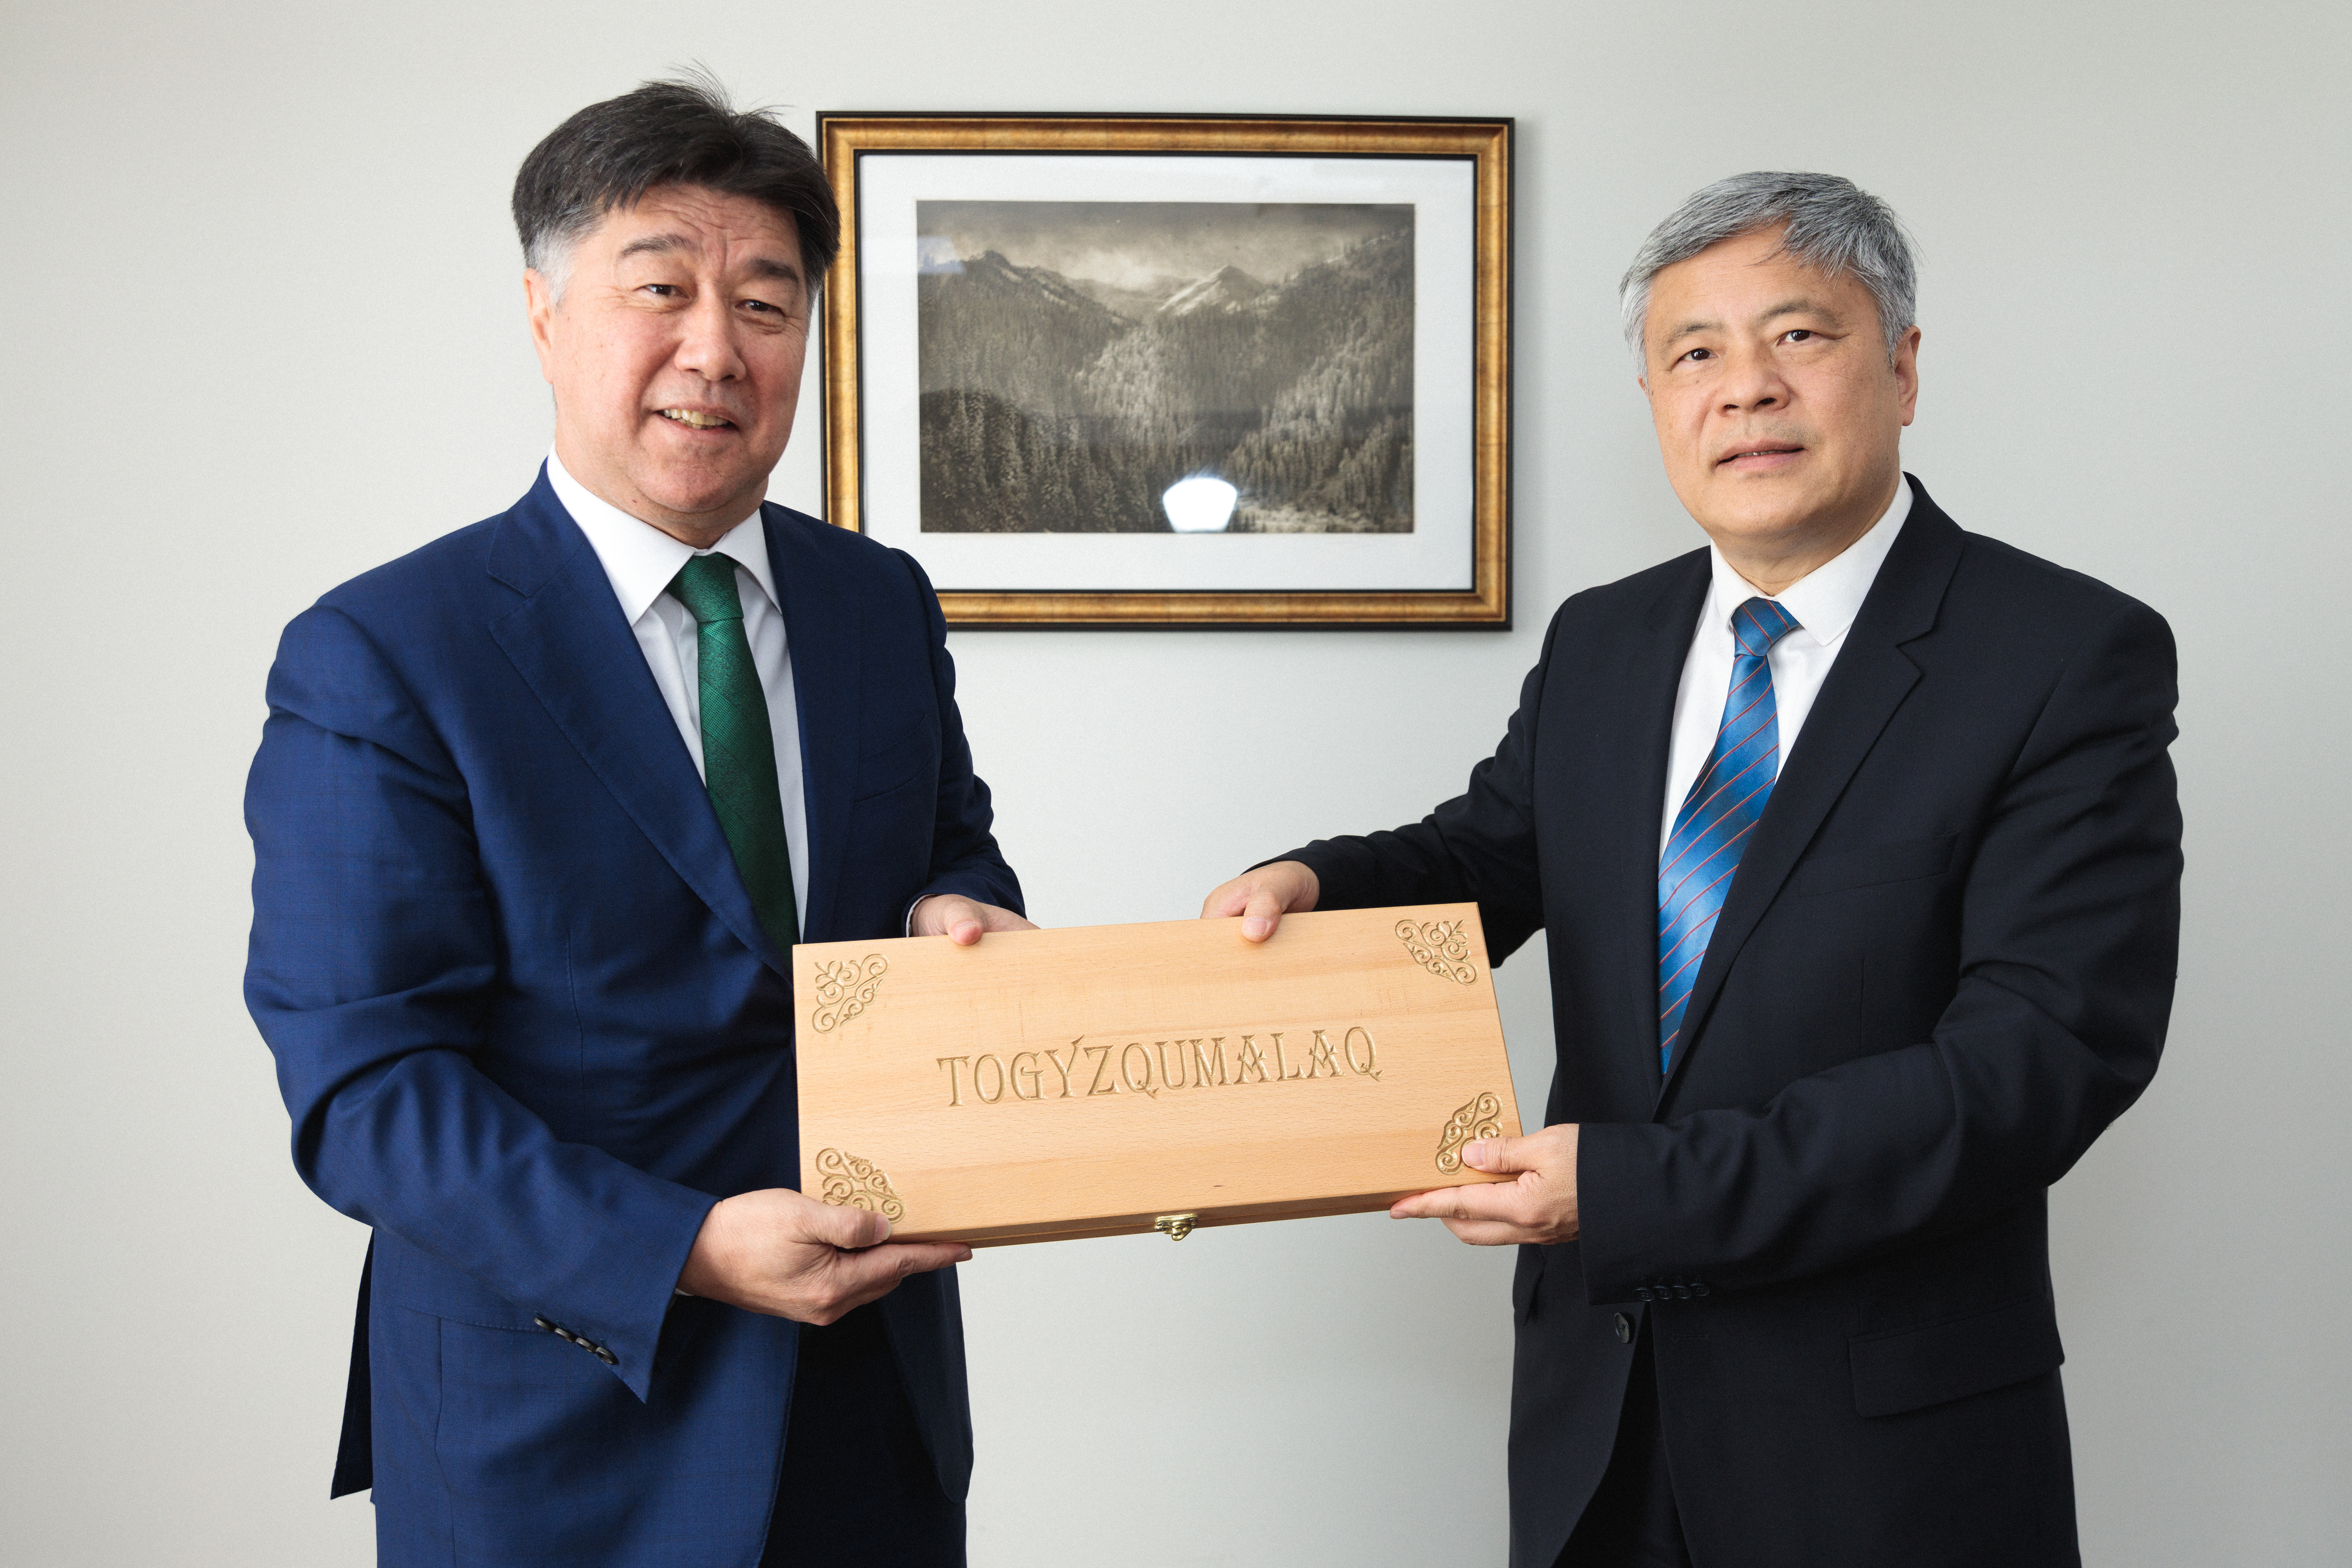 КНР и Астанинский хаб расширяют сотрудничество в рамках развития Китайско-Центральноазиатской сети академий госуправления